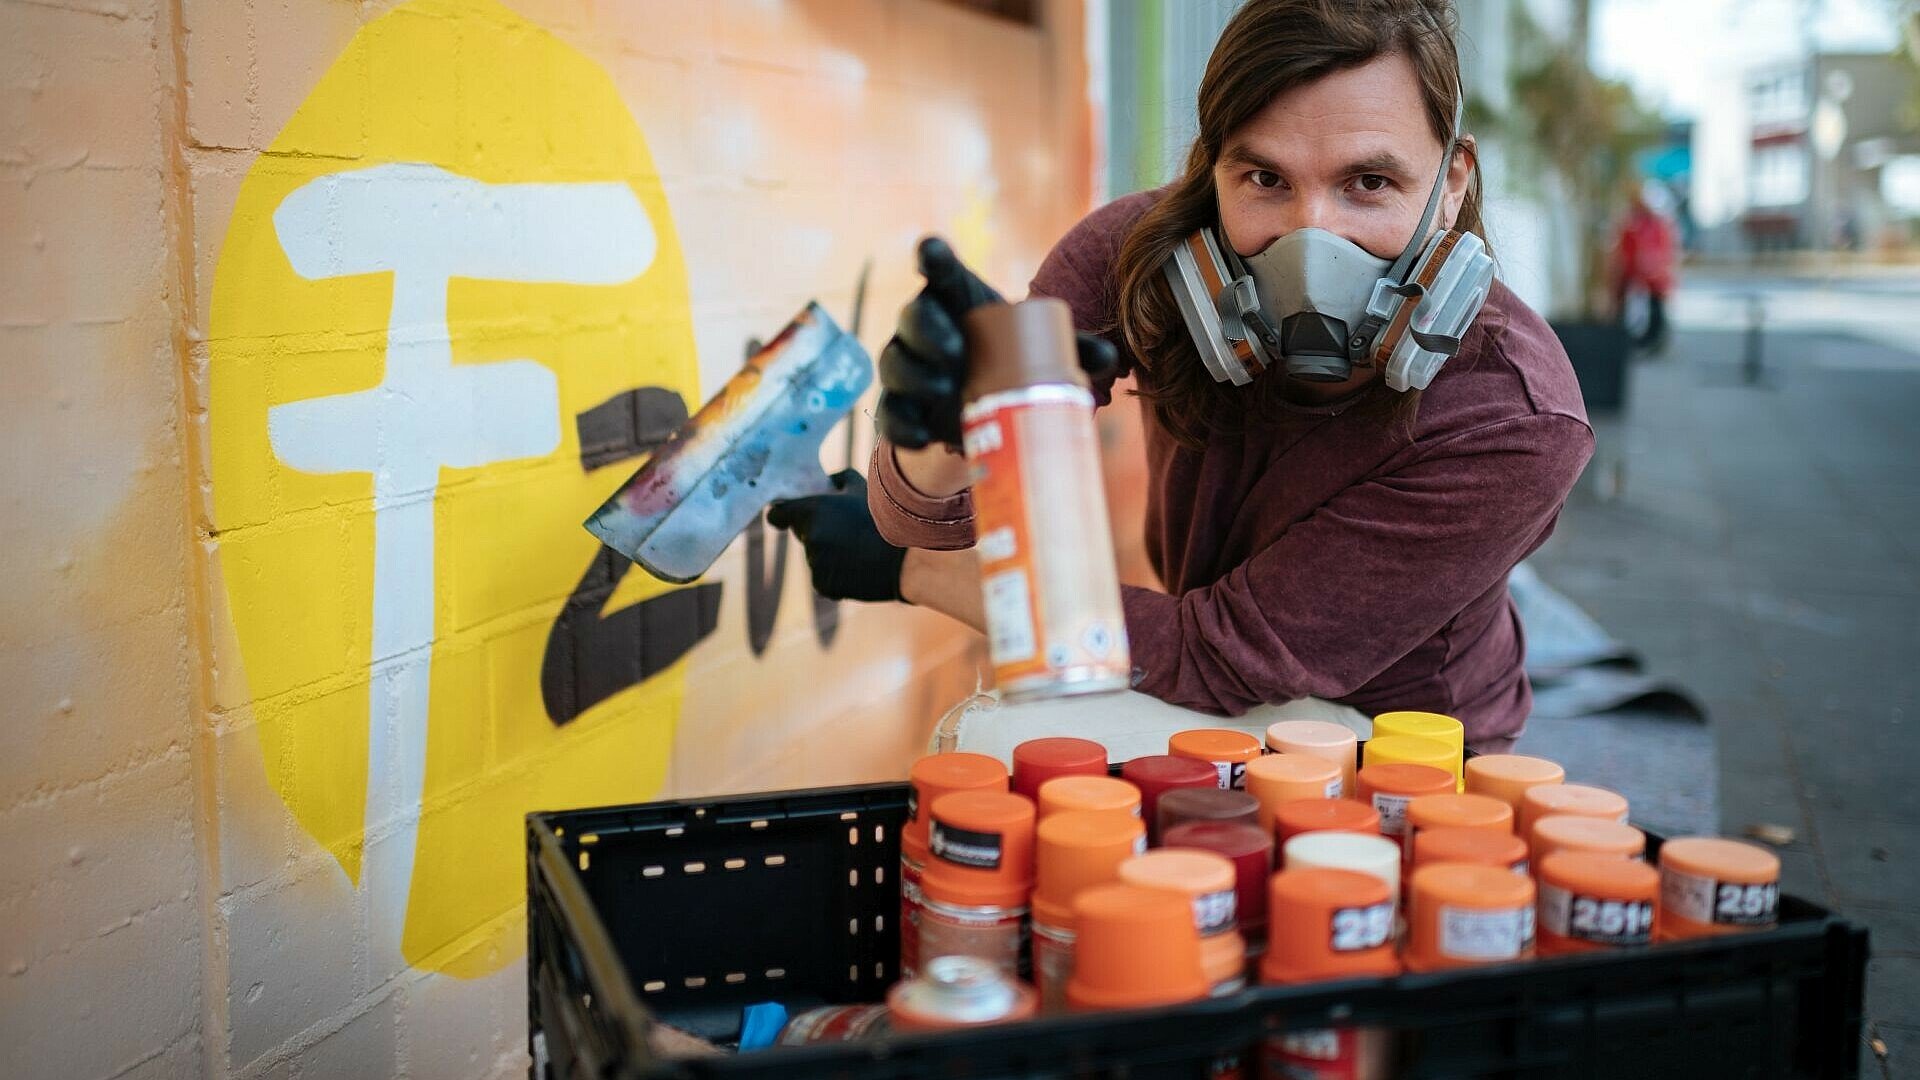 Künstler Matthias Furch sprüht das Logo des Jugendzentrums auf die Wand